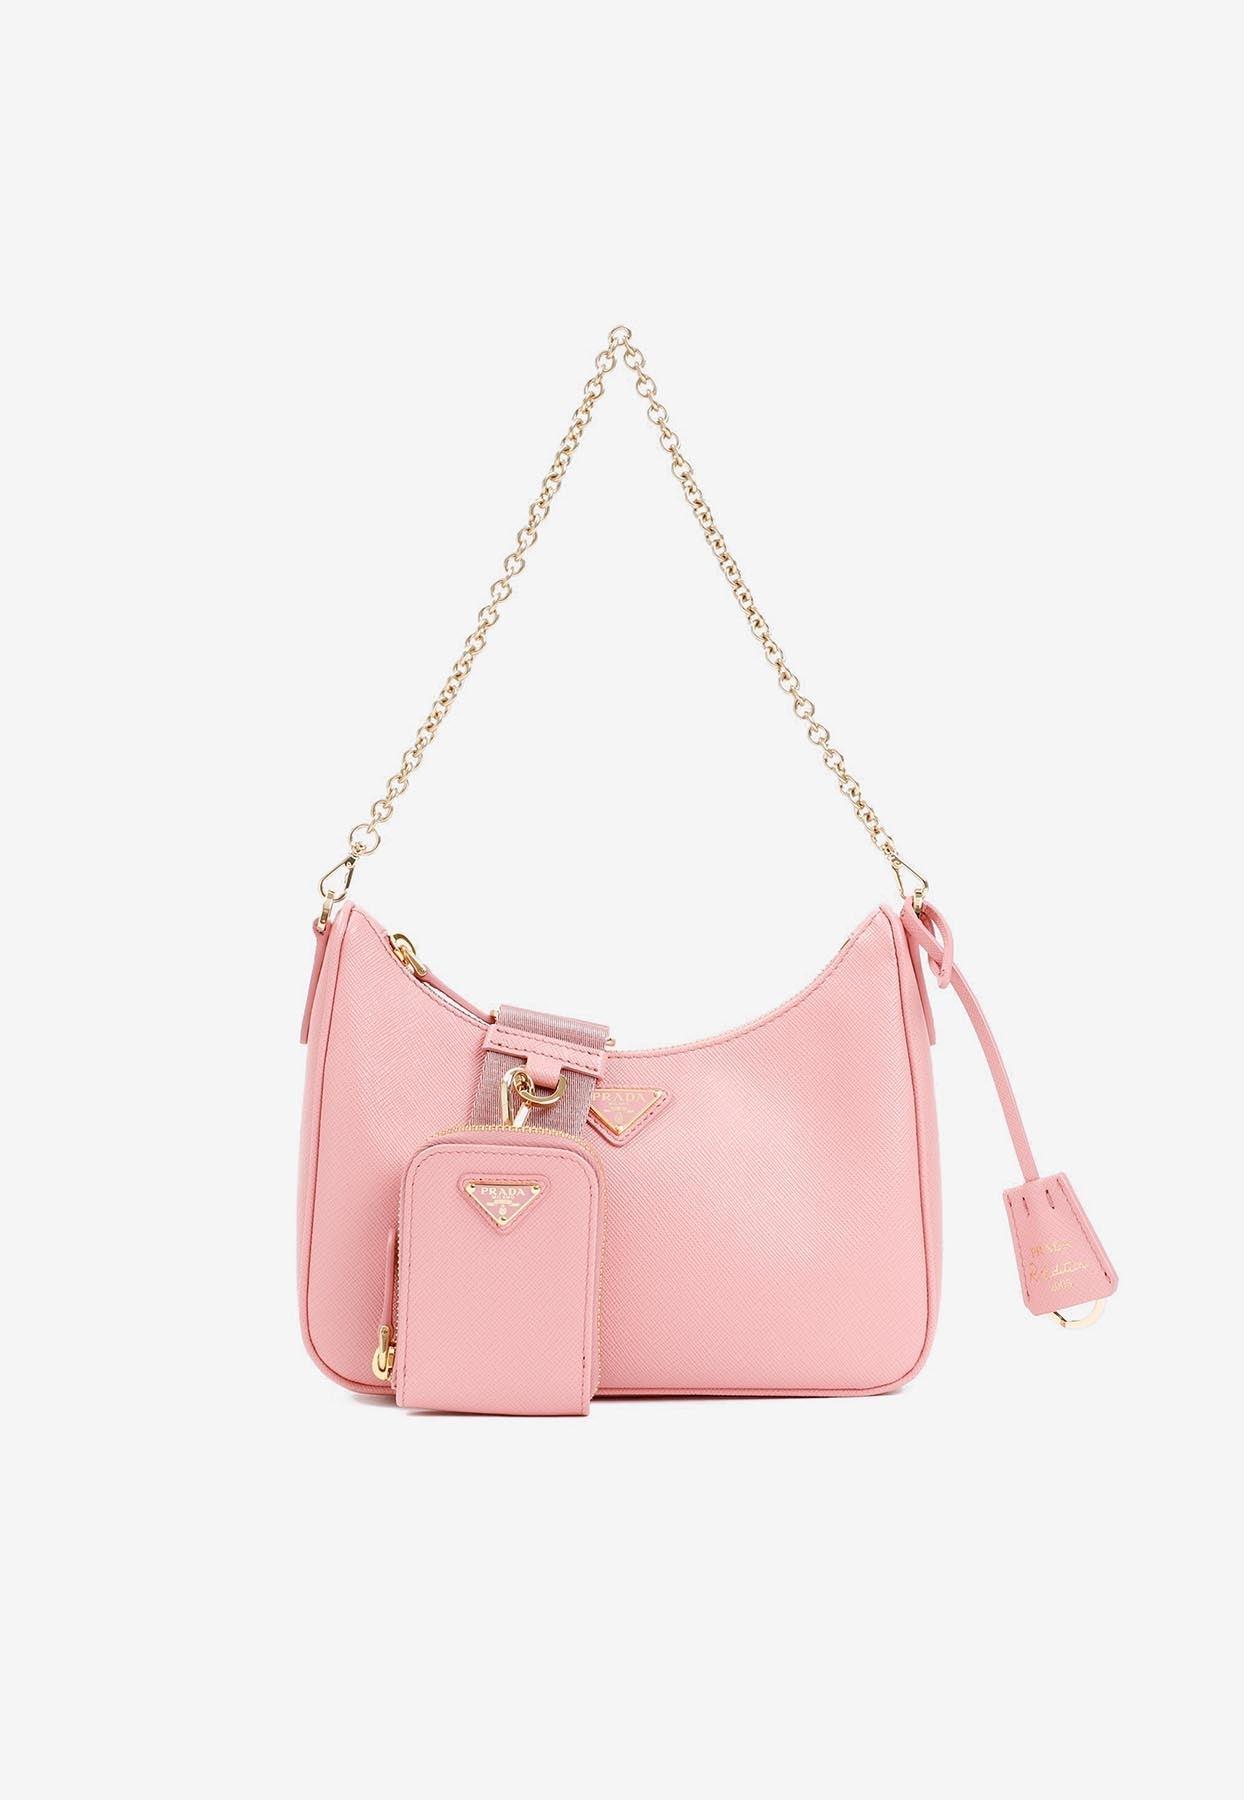 prada leather shoulder bag pink